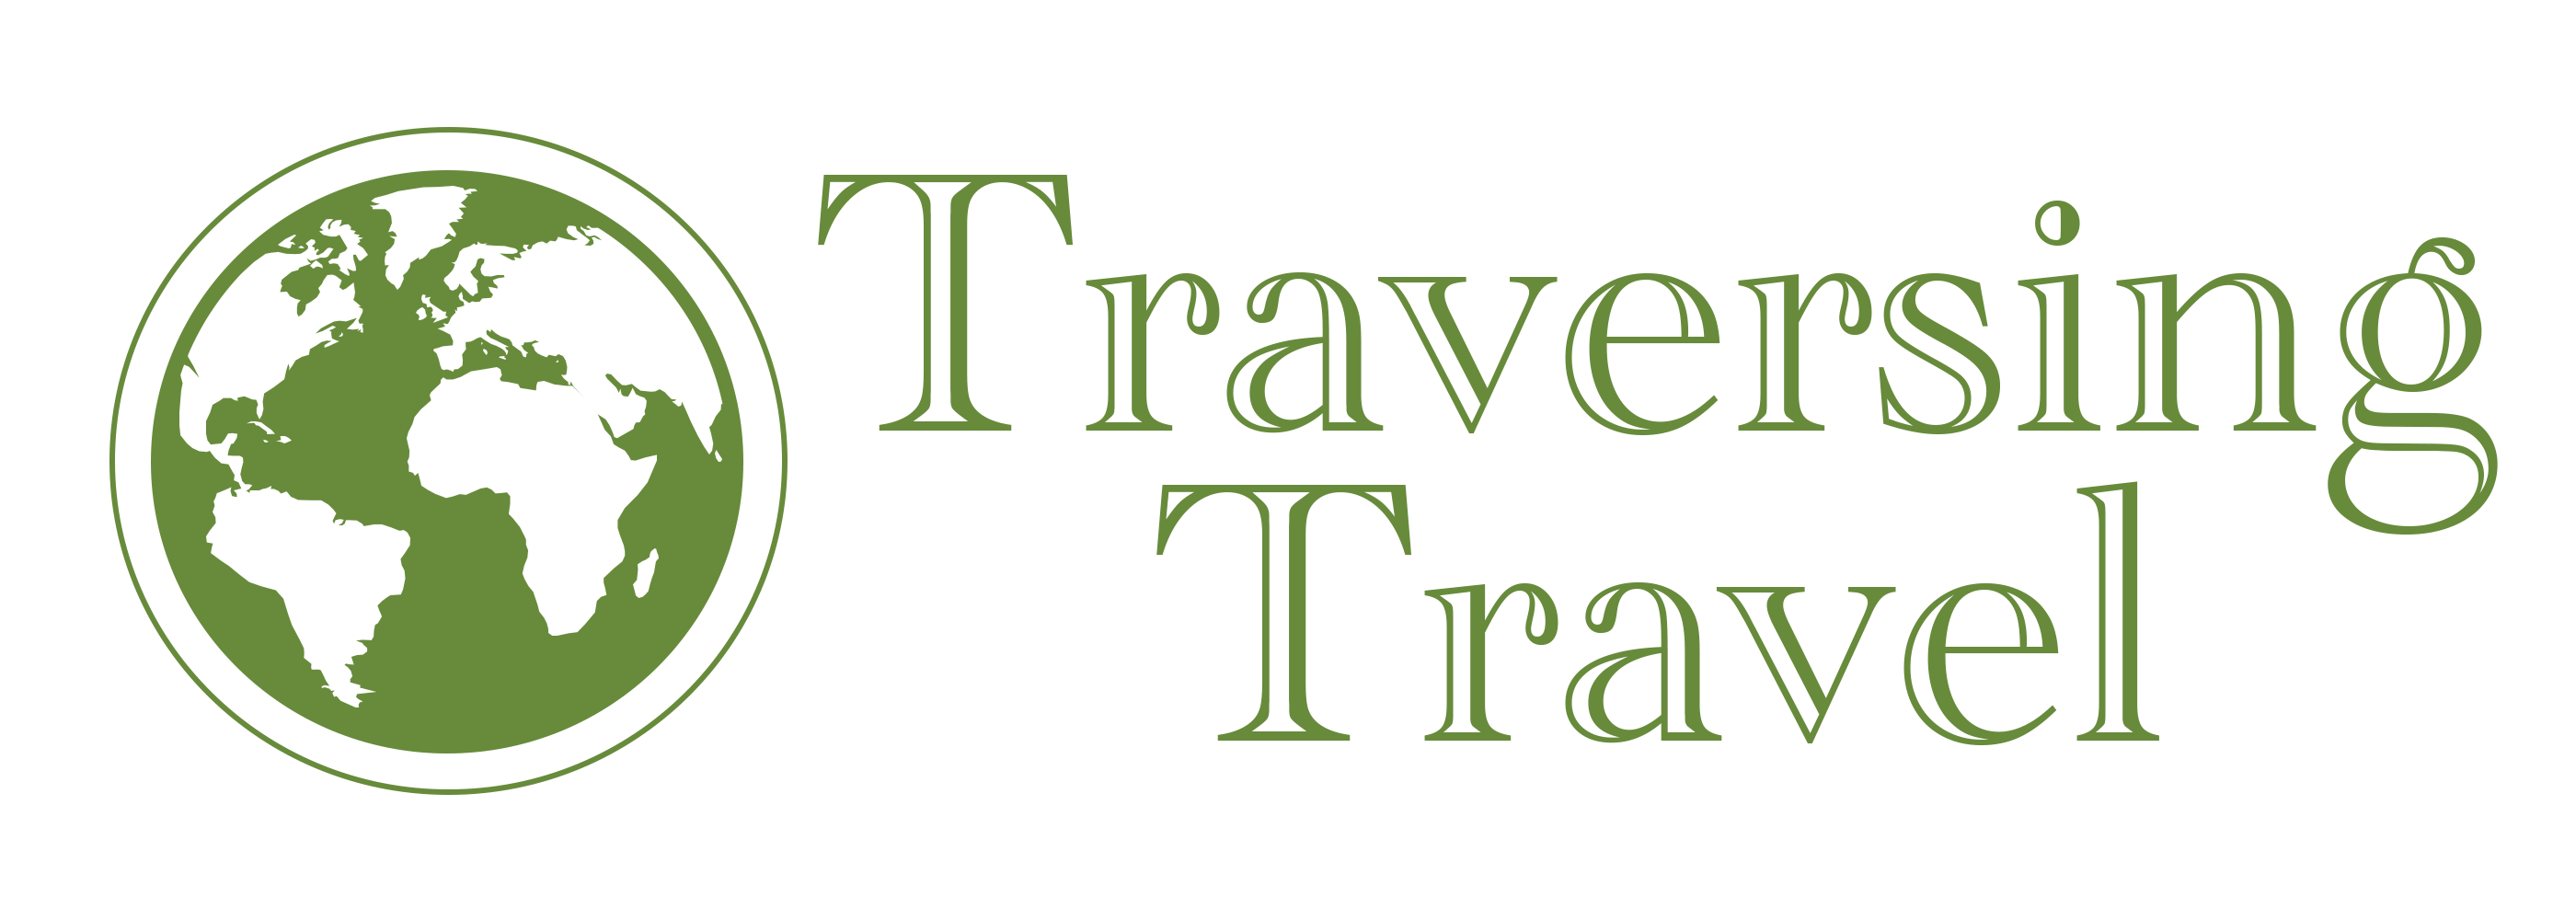 Traversing Travel